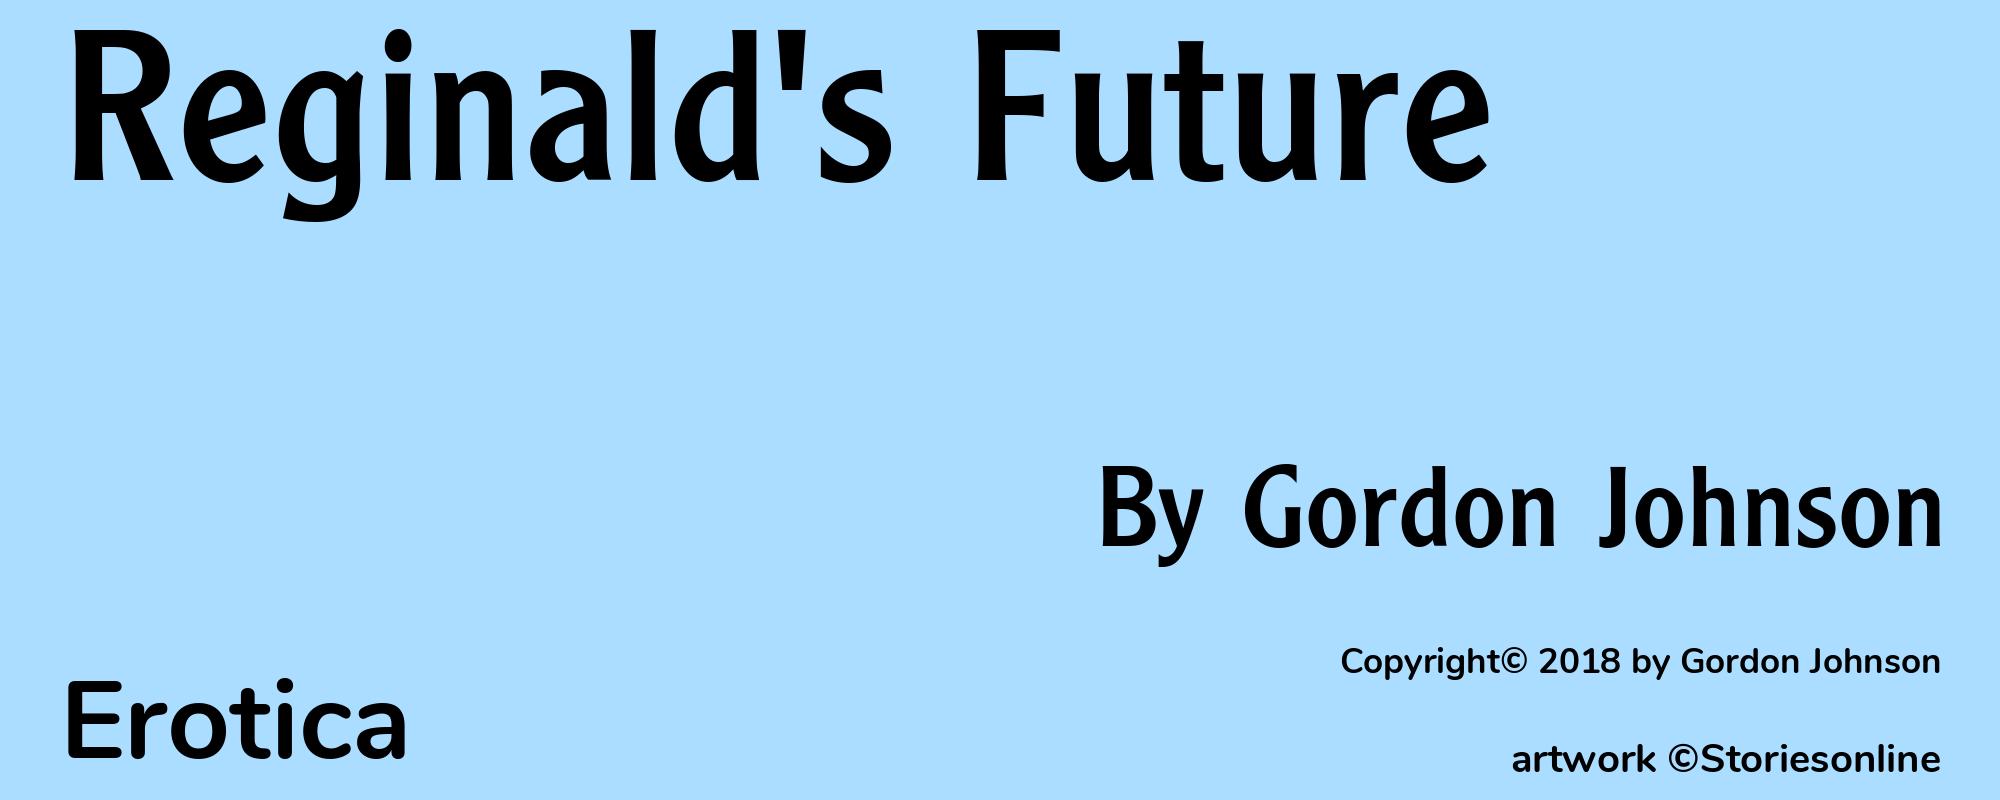 Reginald's Future - Cover